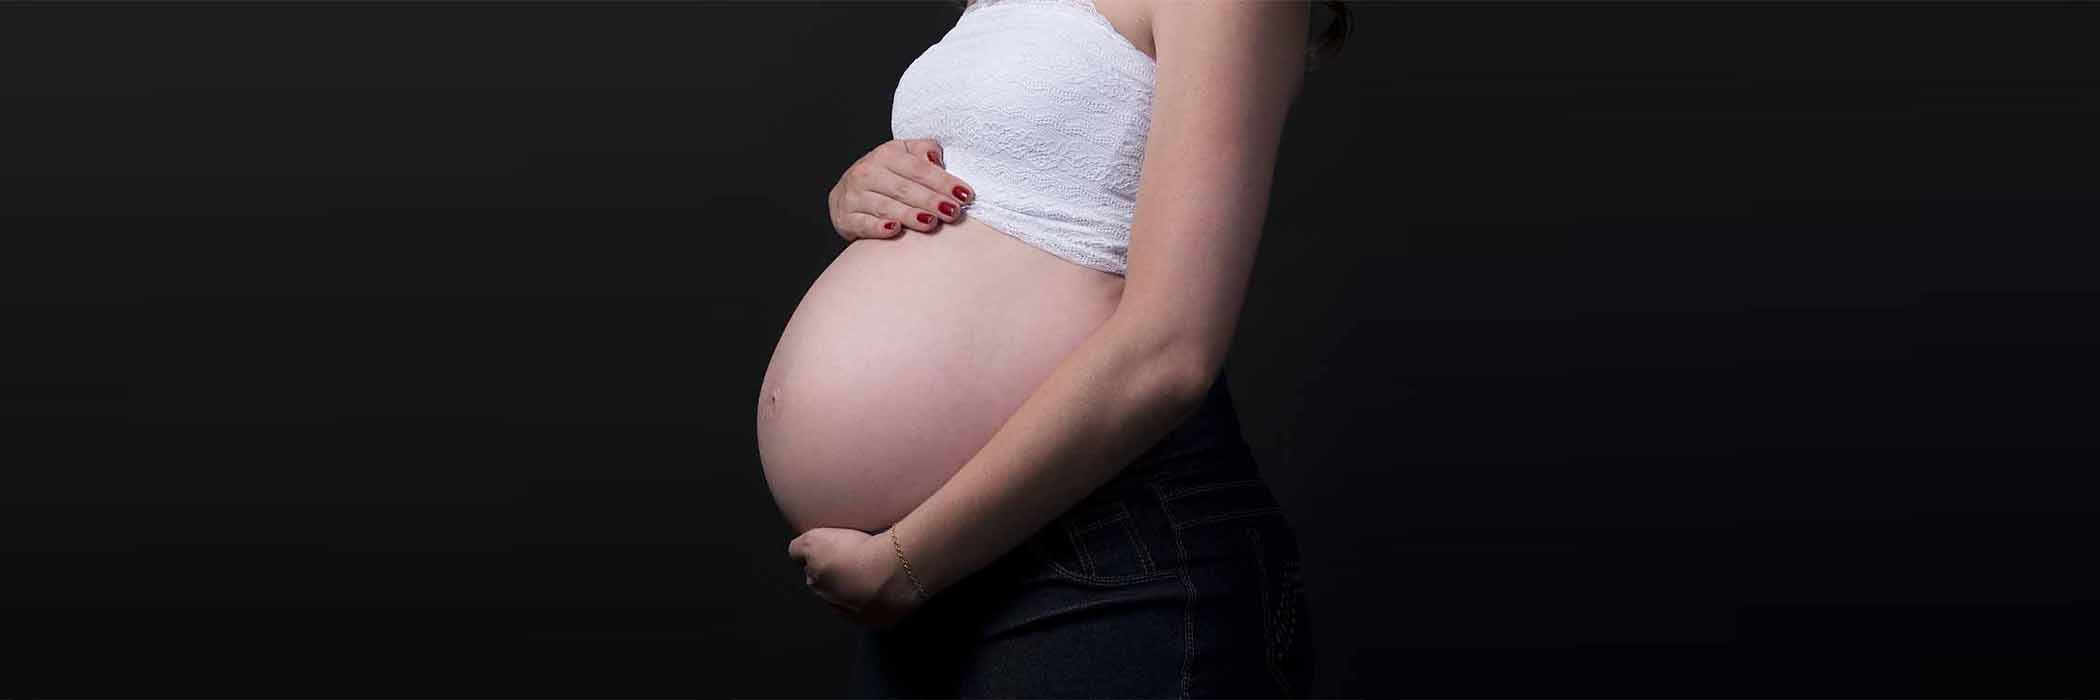 임신중인-임산부의-볼록한-배-사진